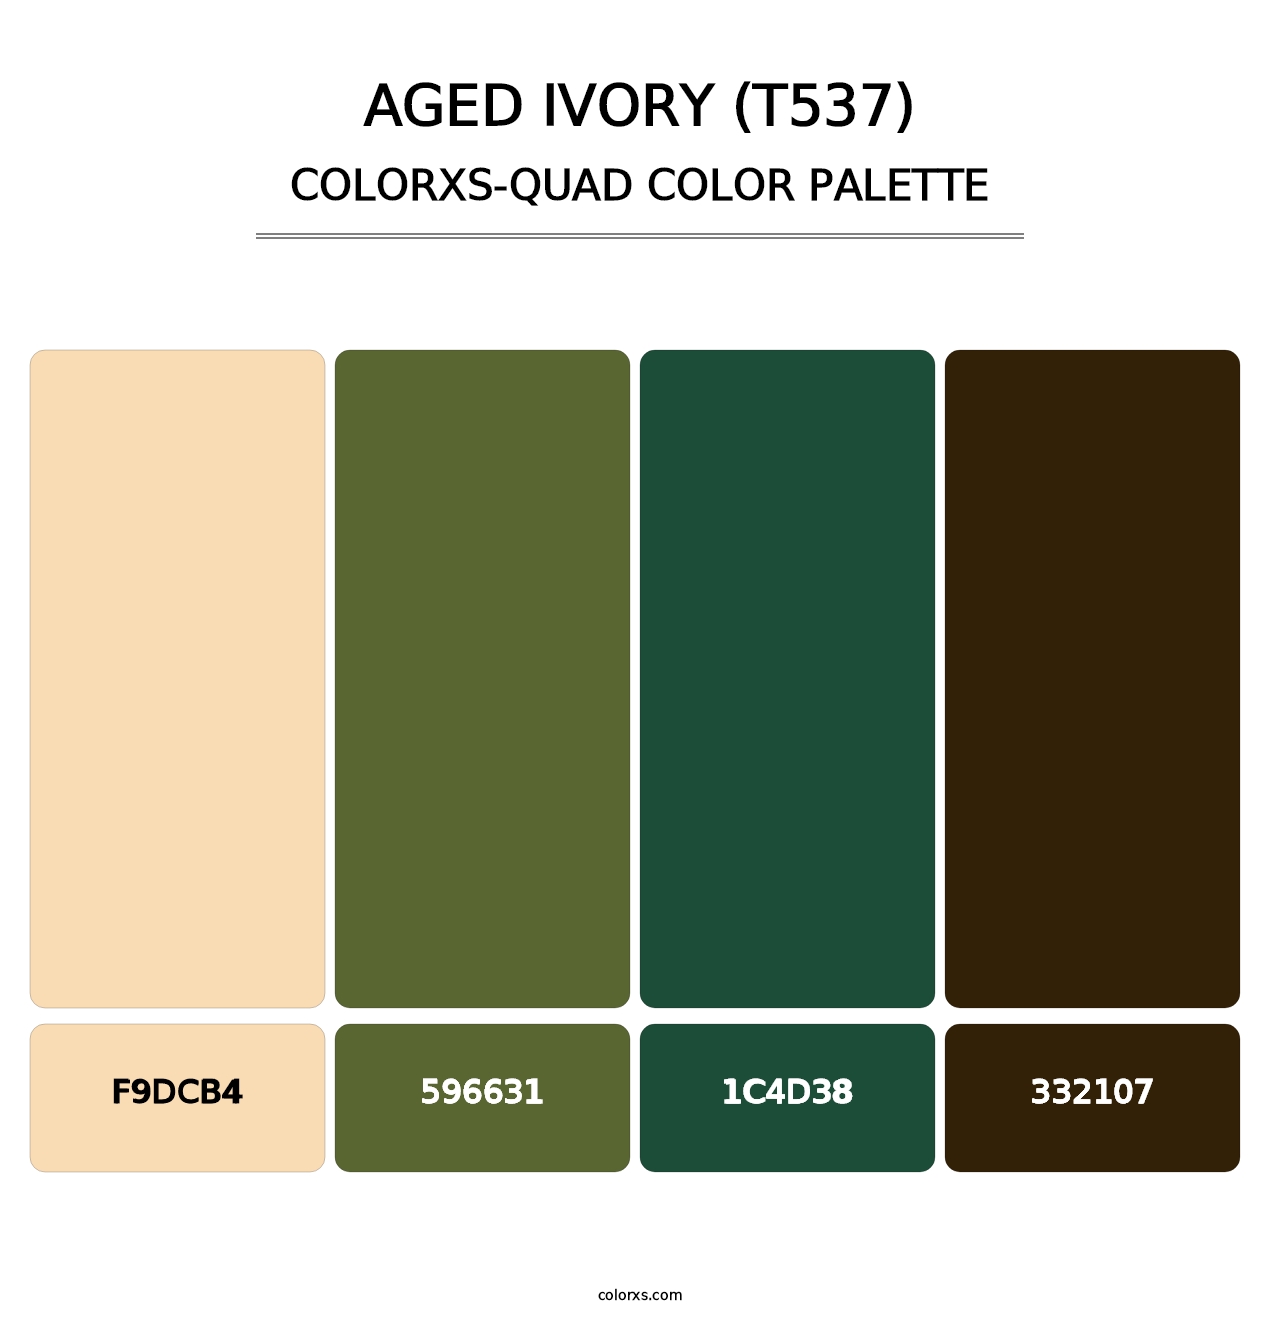 Aged Ivory (T537) - Colorxs Quad Palette